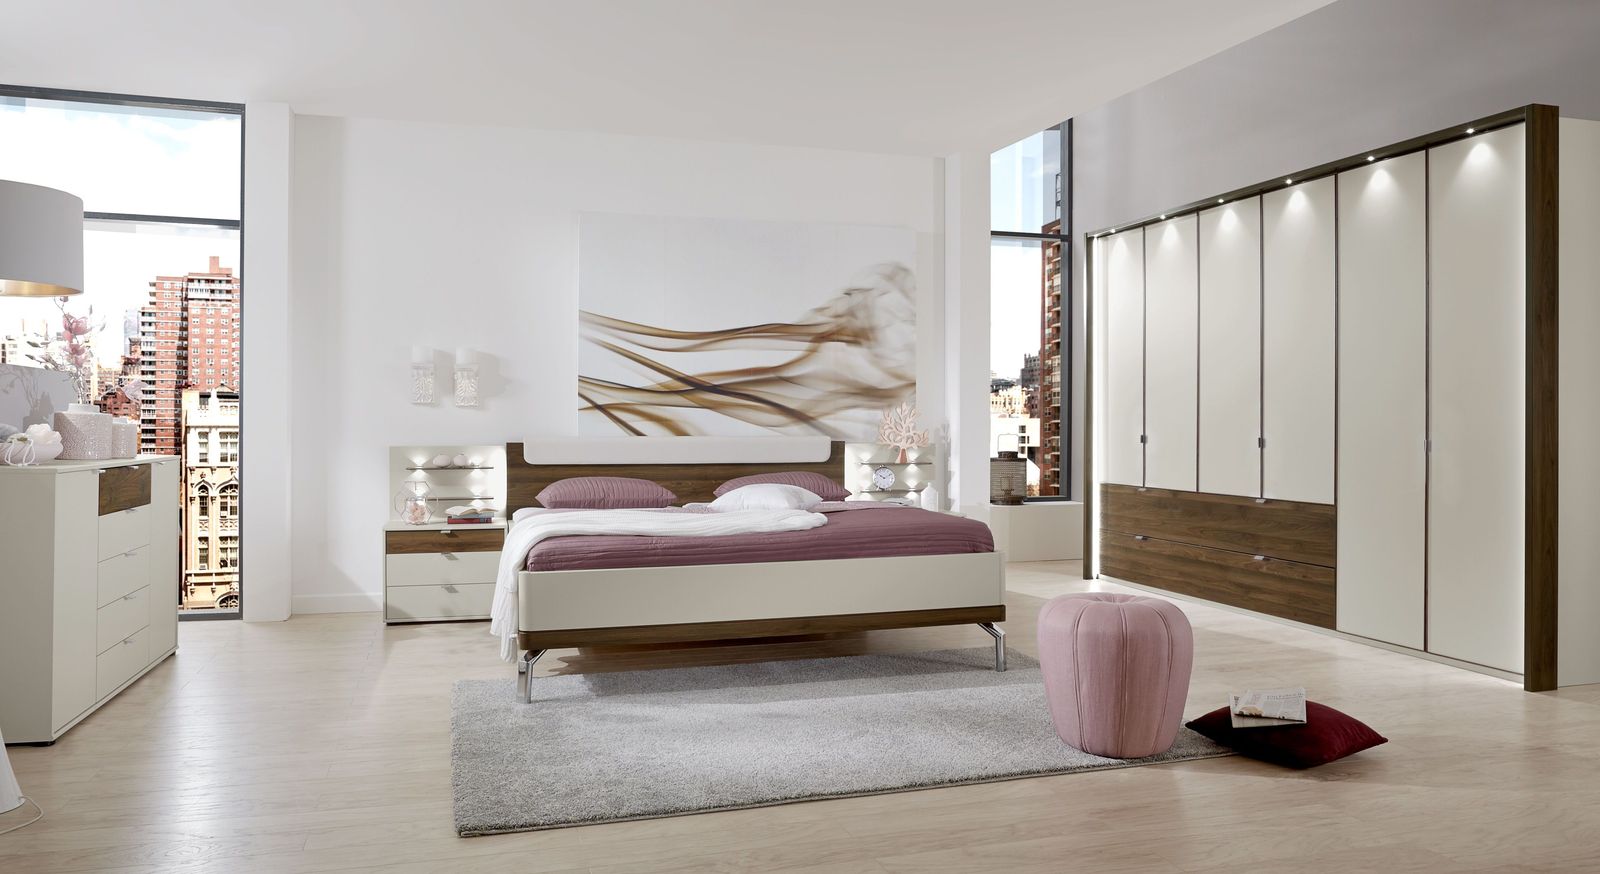 Modernes Schlafzimmer Akola in Nocce und Champagner Dekor